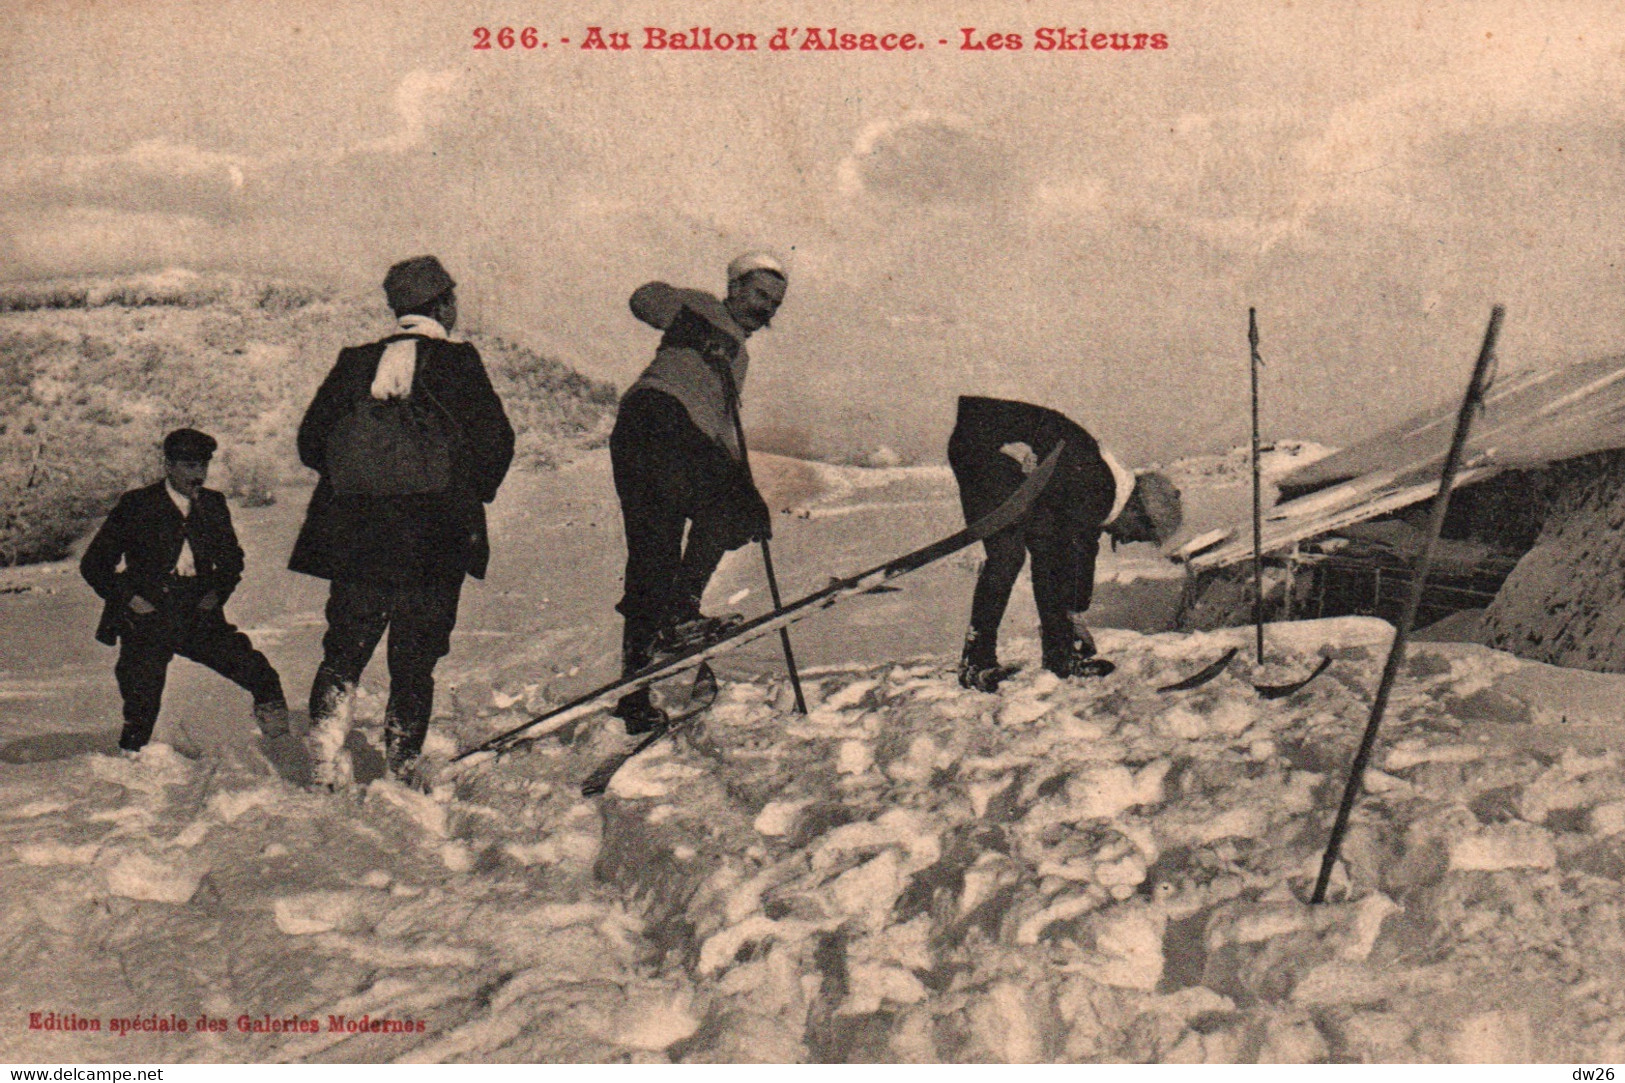 Sports D'hiver Dans Les Vosges - Ski: Les Skieurs Au Ballon D'Alsace - Edition Galeries Modernes - Carte N° 266 - Winter Sports